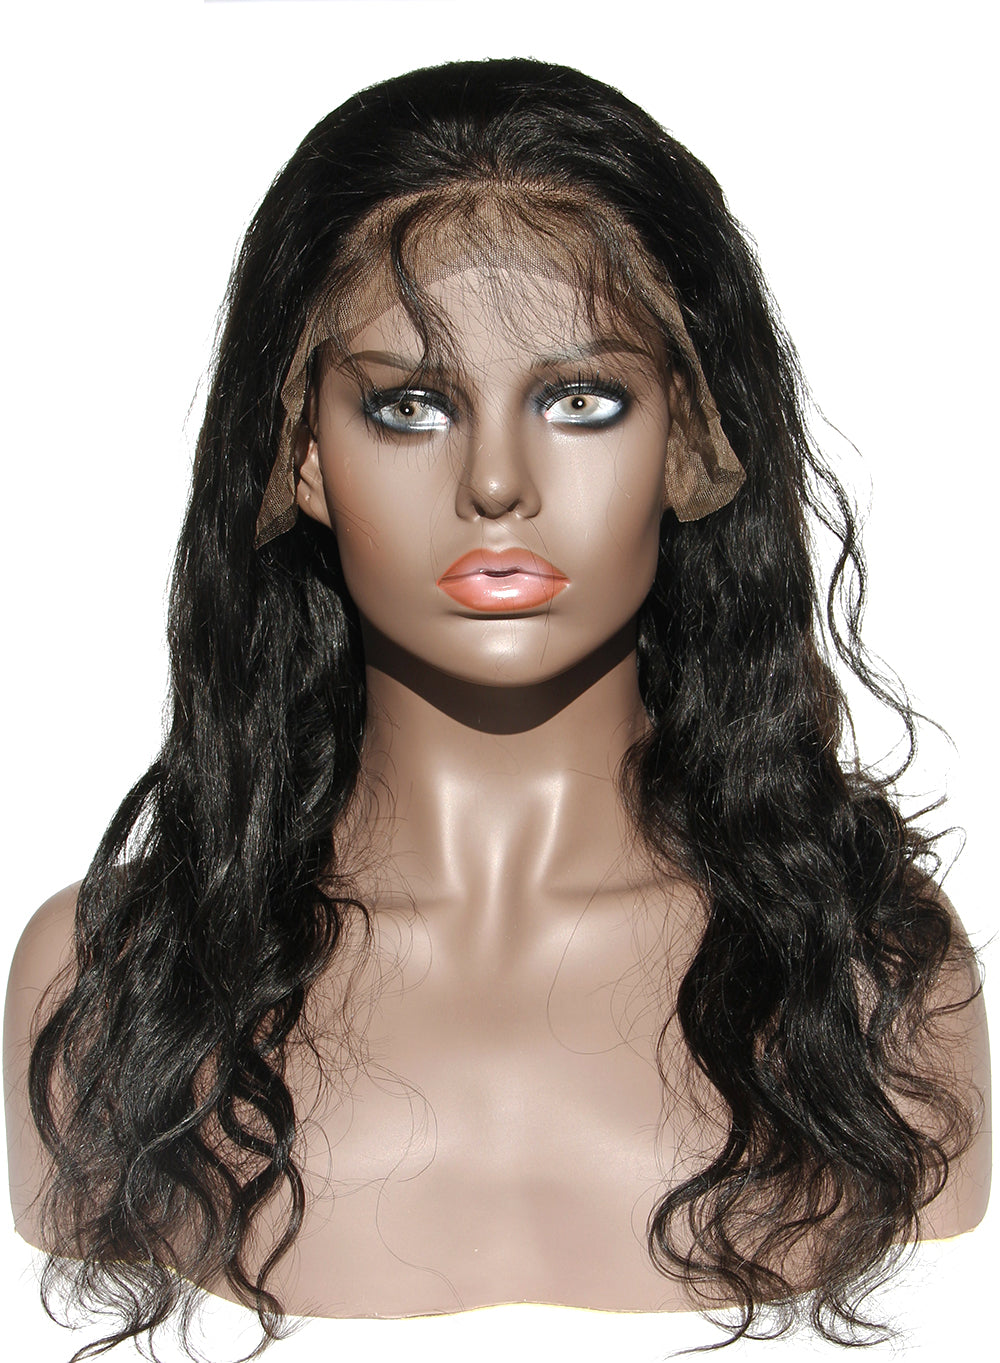 Ms Fenda Brazilian Virgin Human Hair Body Wave Style 150% Density 13x6 Lace Wigs